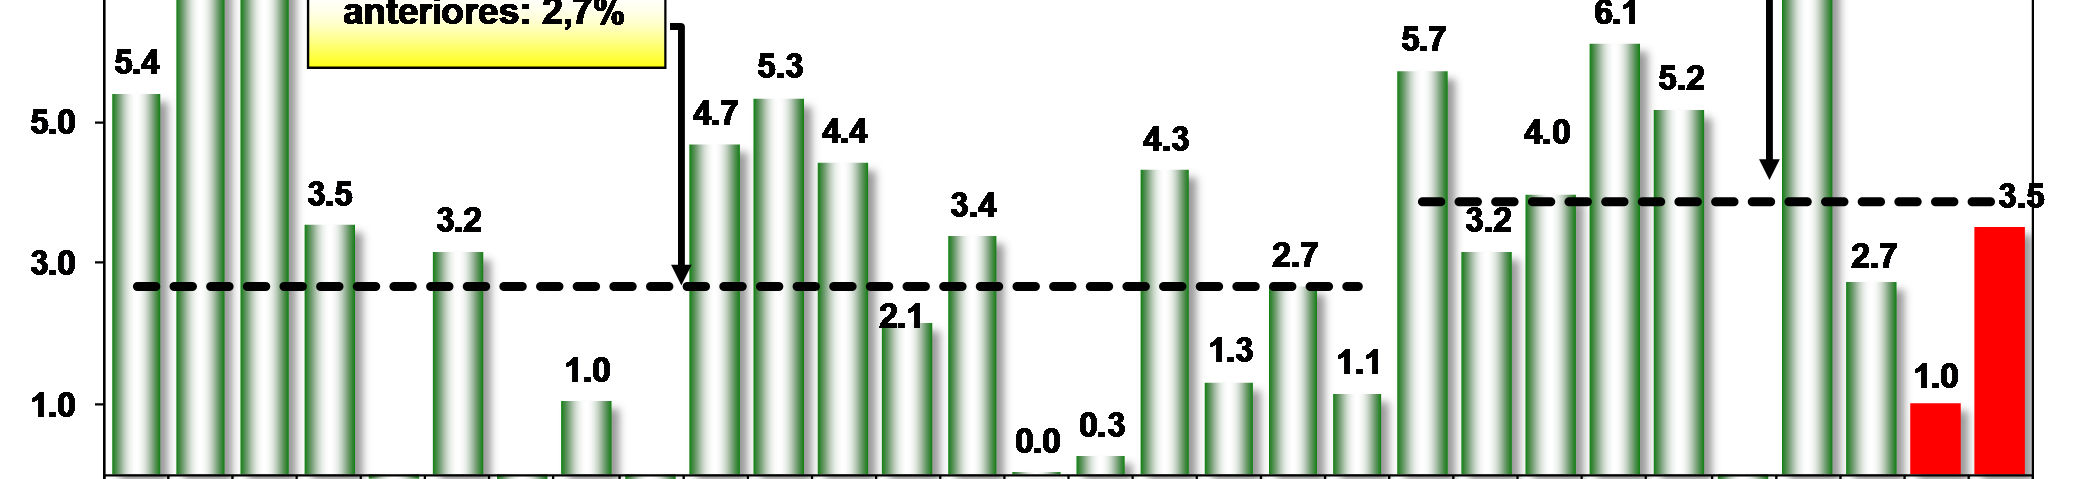 VARIAÇÃO DO PIB DO BRASIL 1984-2013 em % 14